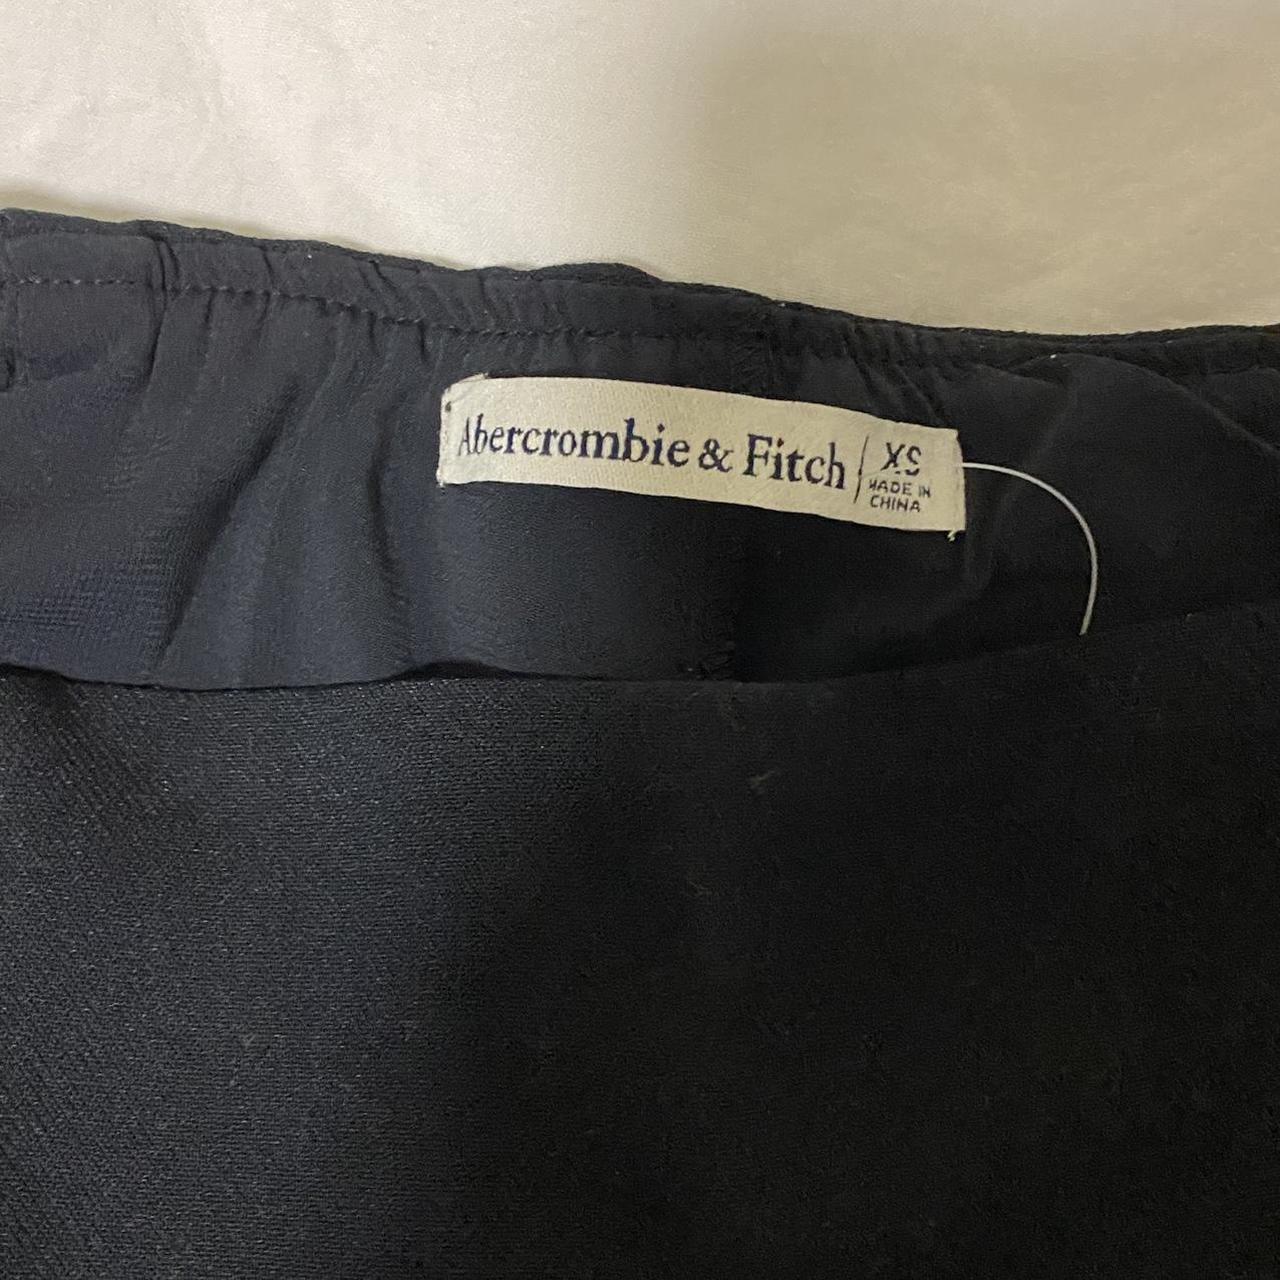 Abercrombie & Fitch Menswear Mini Skort Ultra high... - Depop